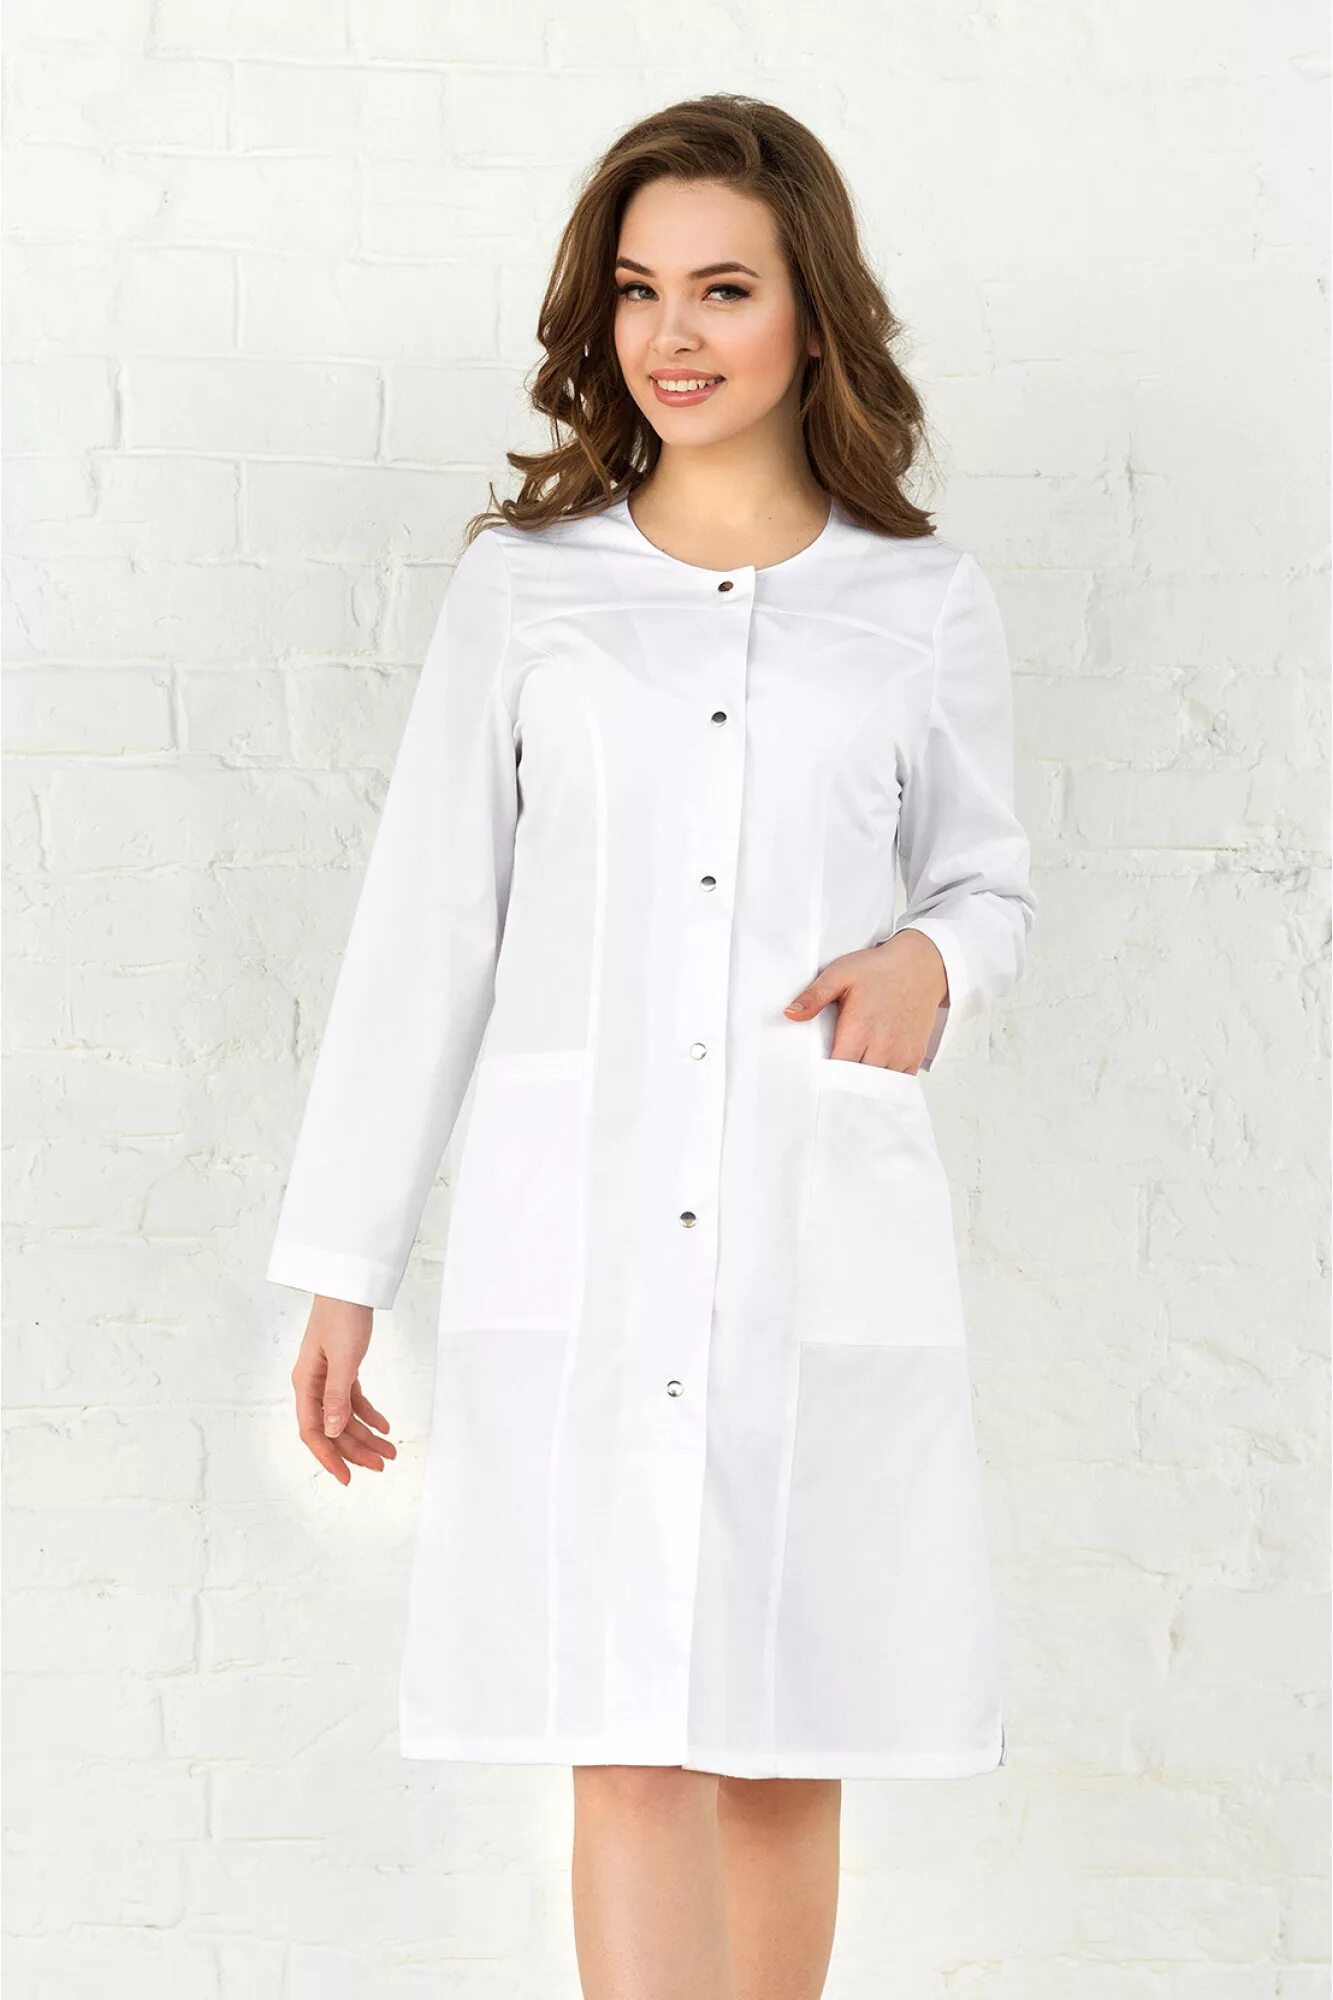 Медицинский халат-платье Медэлит. Халат белый медицинский вильдберис. Халат валберис медицинский 44 размер. Халат медицинский белый. Халат медицинский женский москва